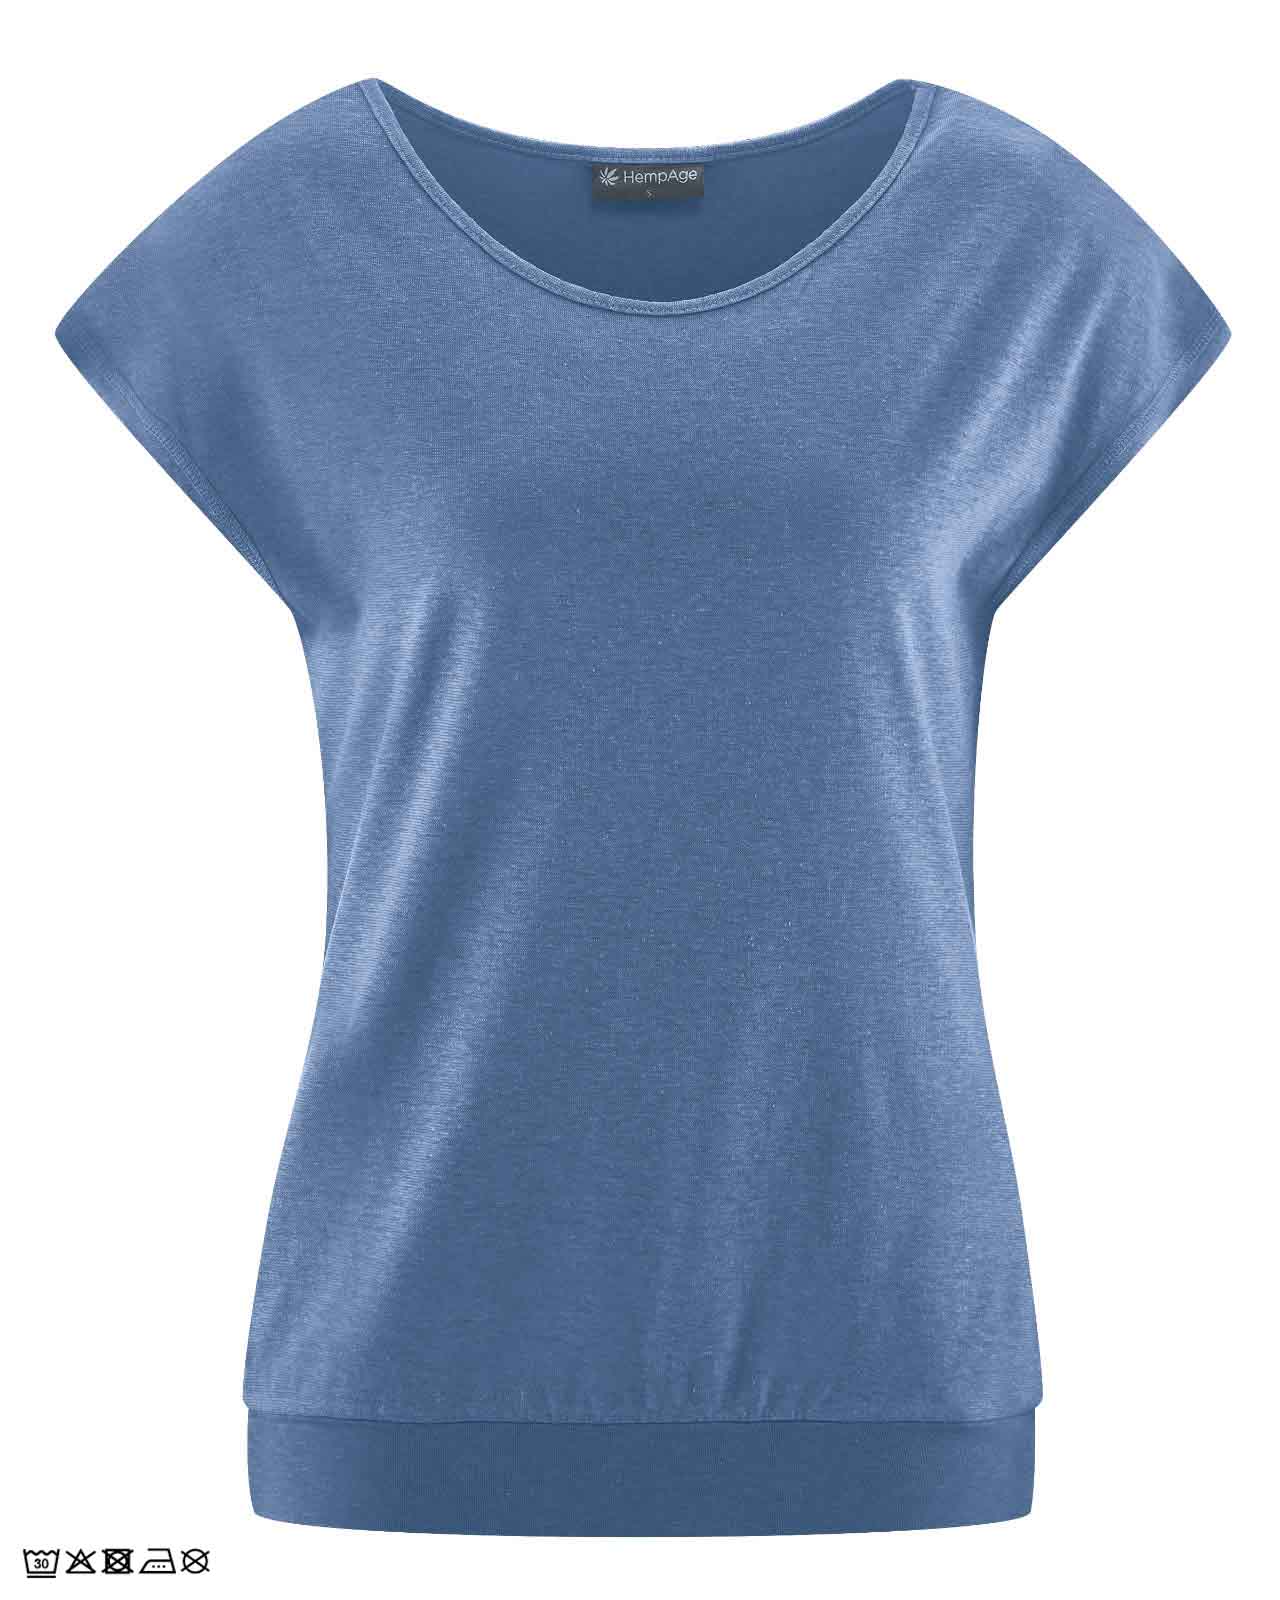 Tee-Shirt-Yoga-SM-Bleu